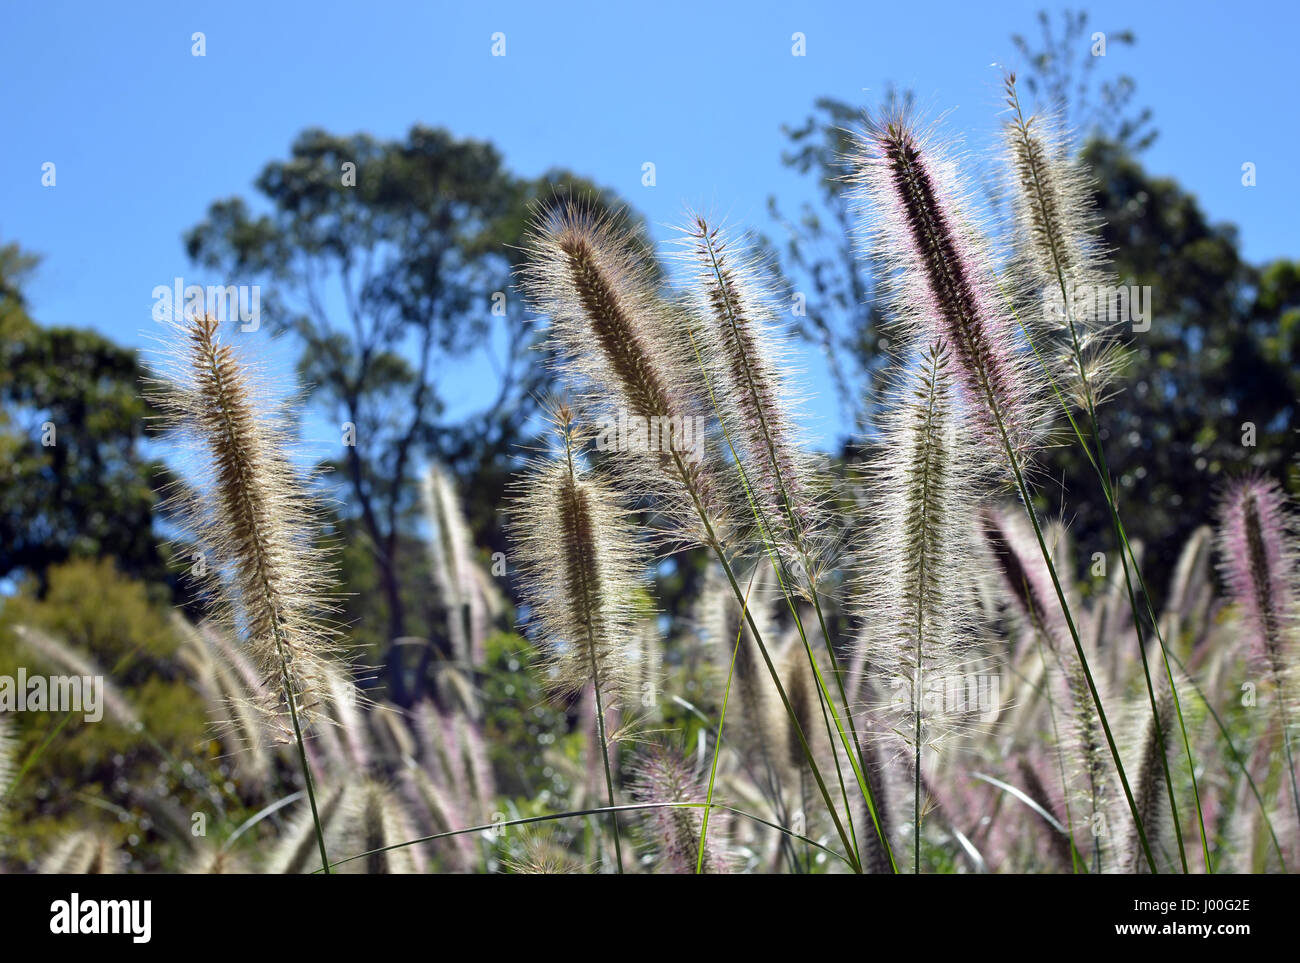 Sonnenlicht durch die gefiederten Flowerheads der einheimischen australischen grass Swamp Fuchsschwanz, Cenchrus Purpurascens. Auch bekannt als Brunnen Grass. Stockfoto